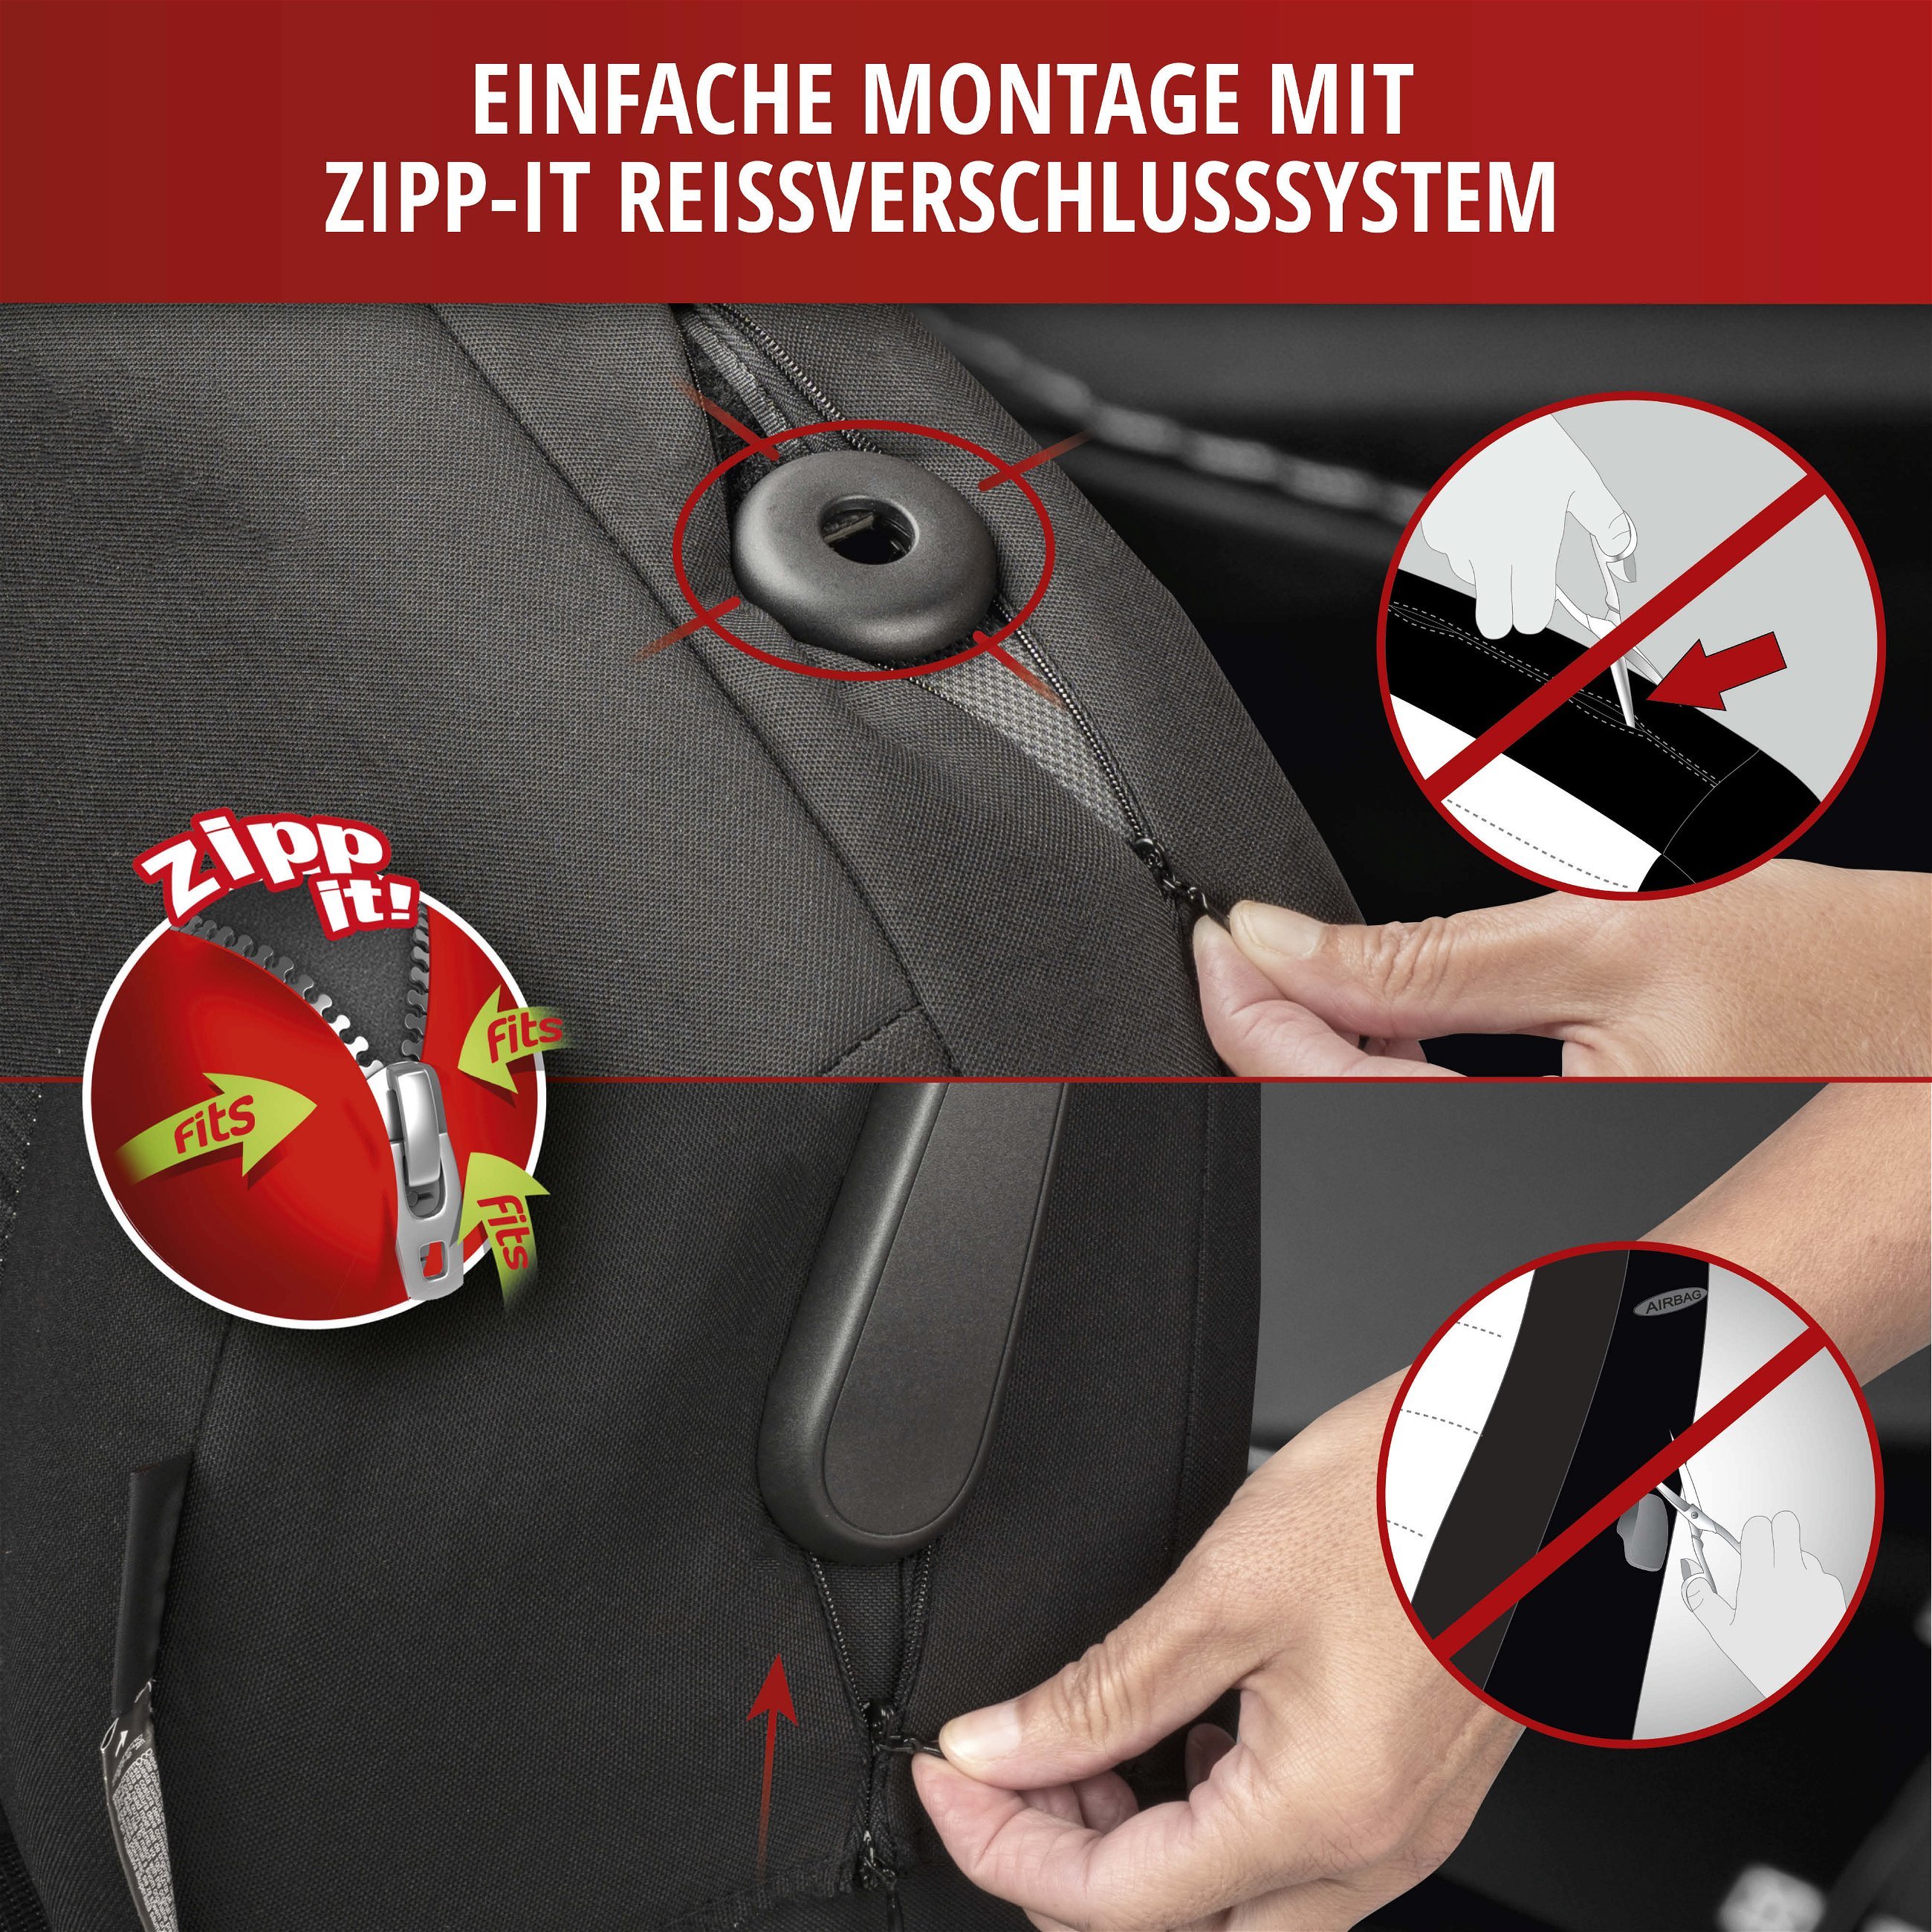 Autositzbezug ZIPP-IT Premium Inde, PKW-Schonbezug Einzelsitz mit Reißverschluss-System schwarz/grau